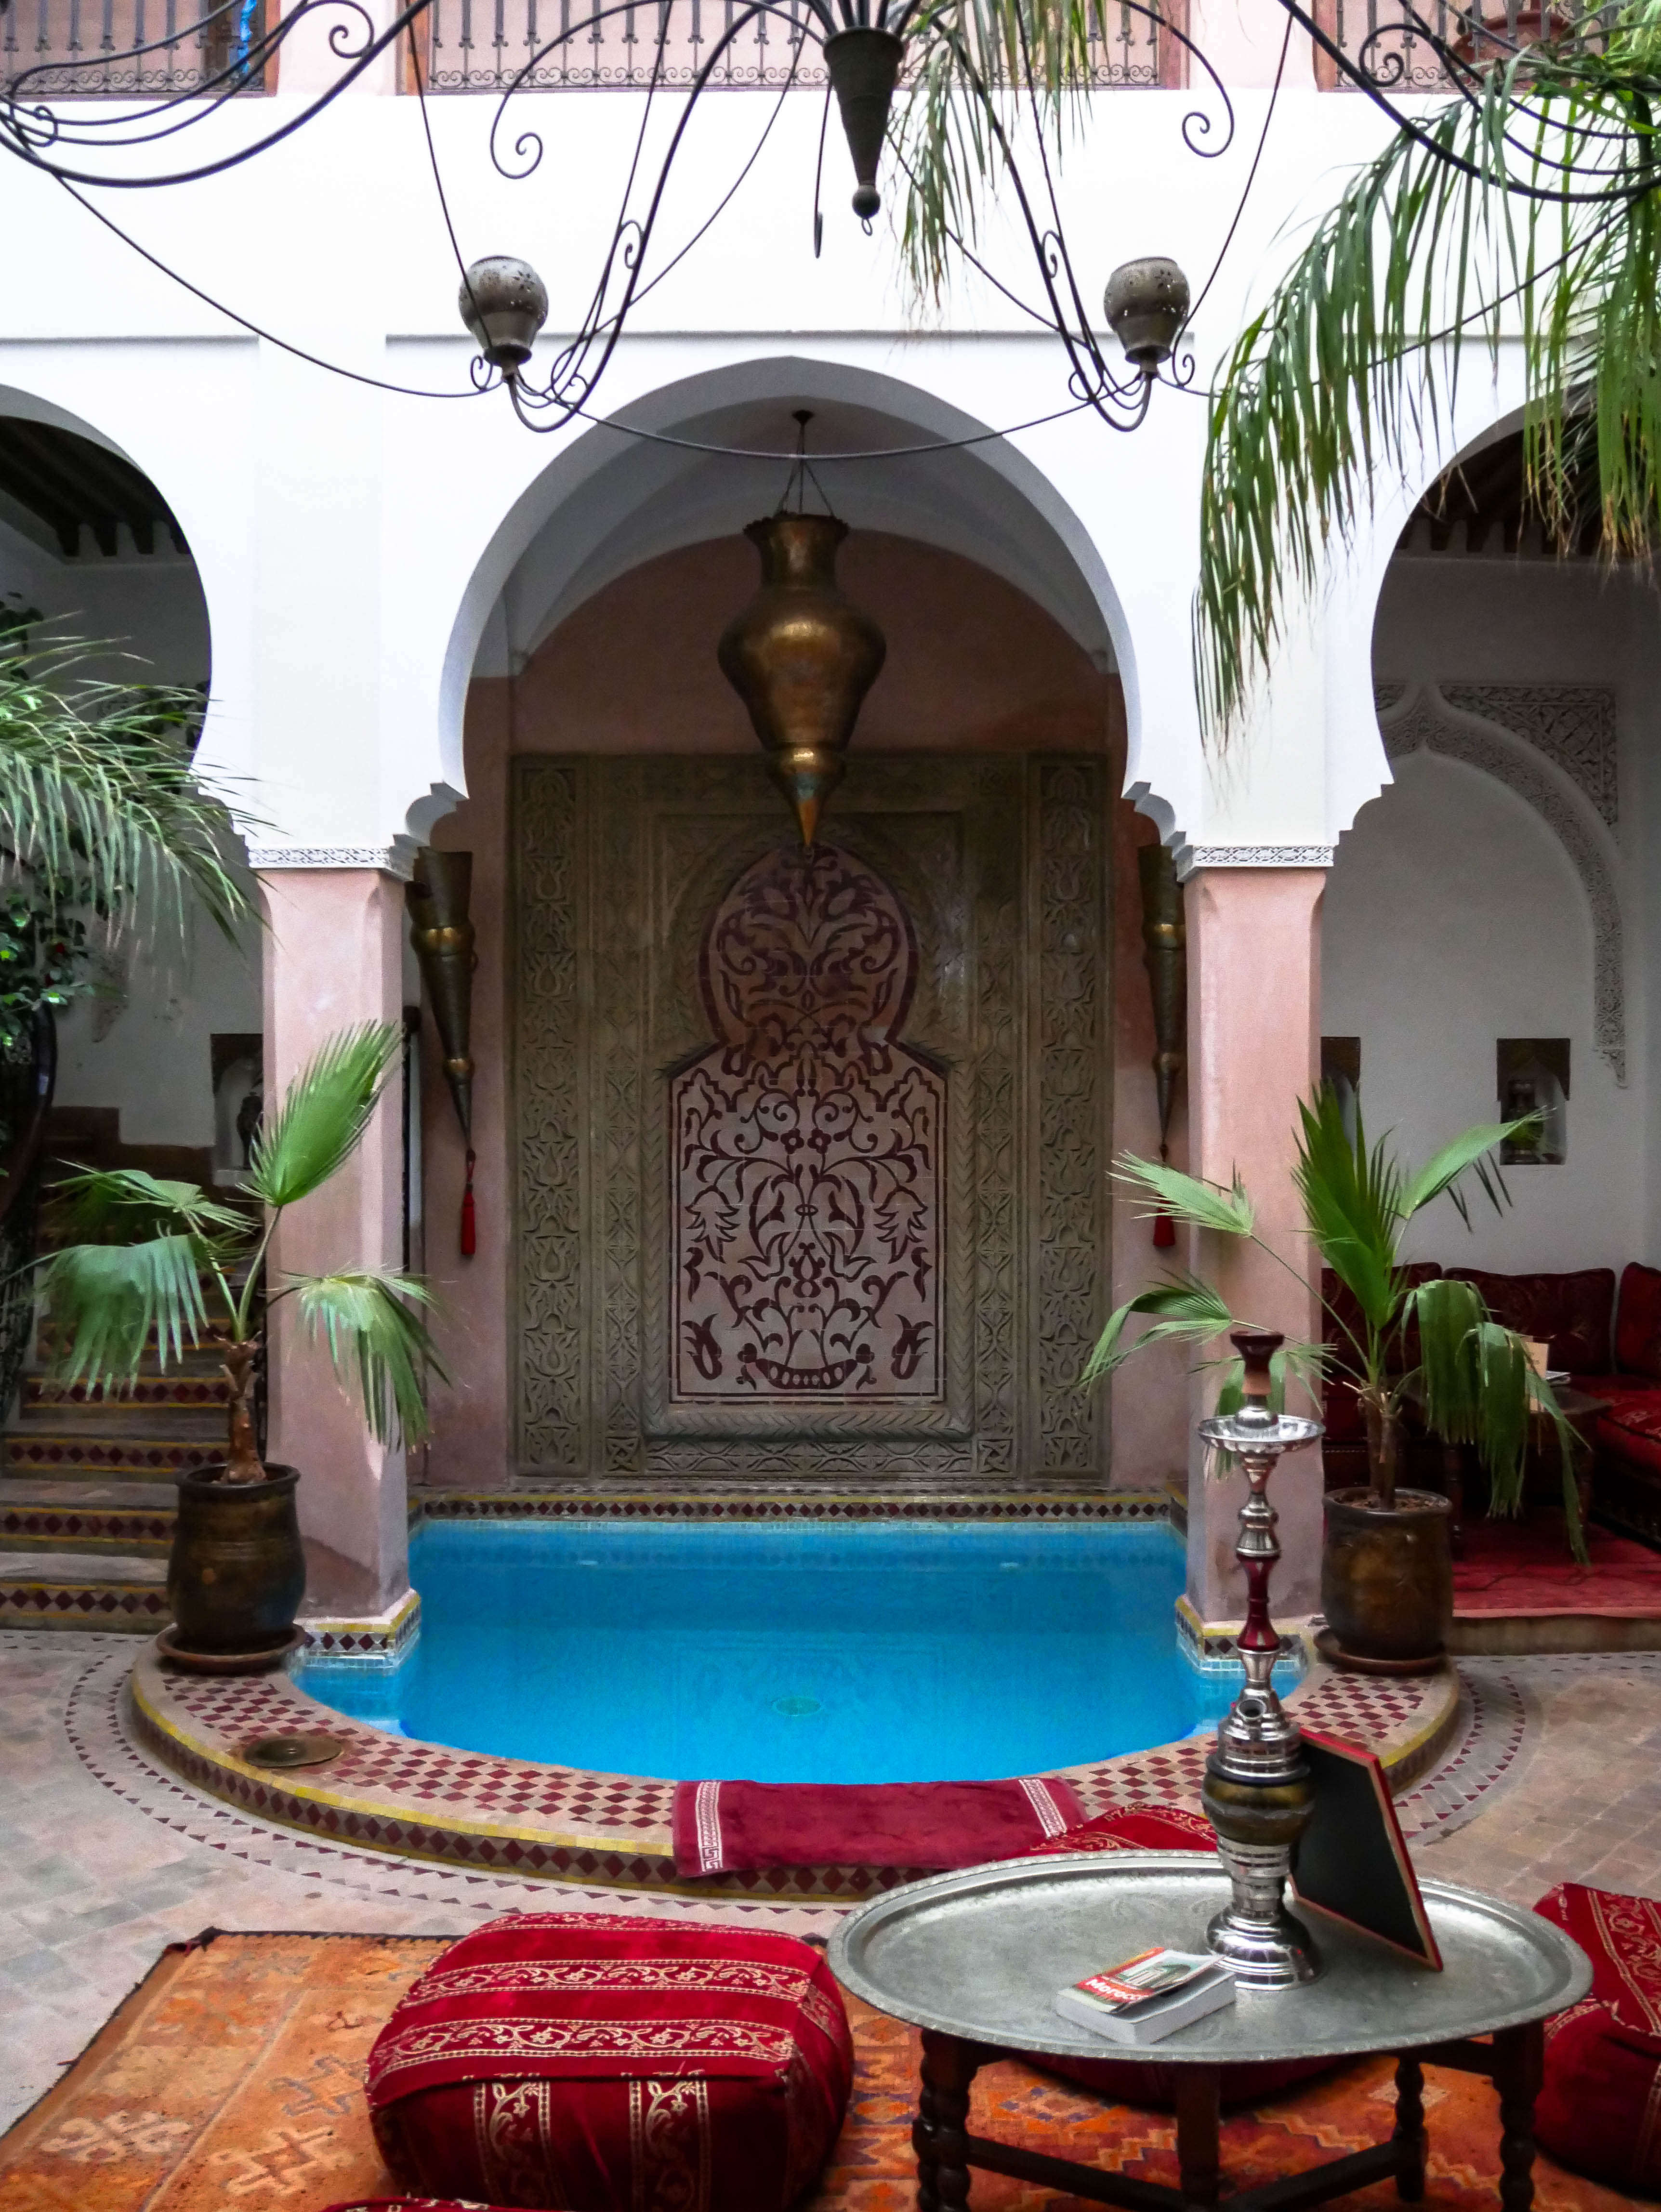 Riad Oumaima in Marrakech, Morocco